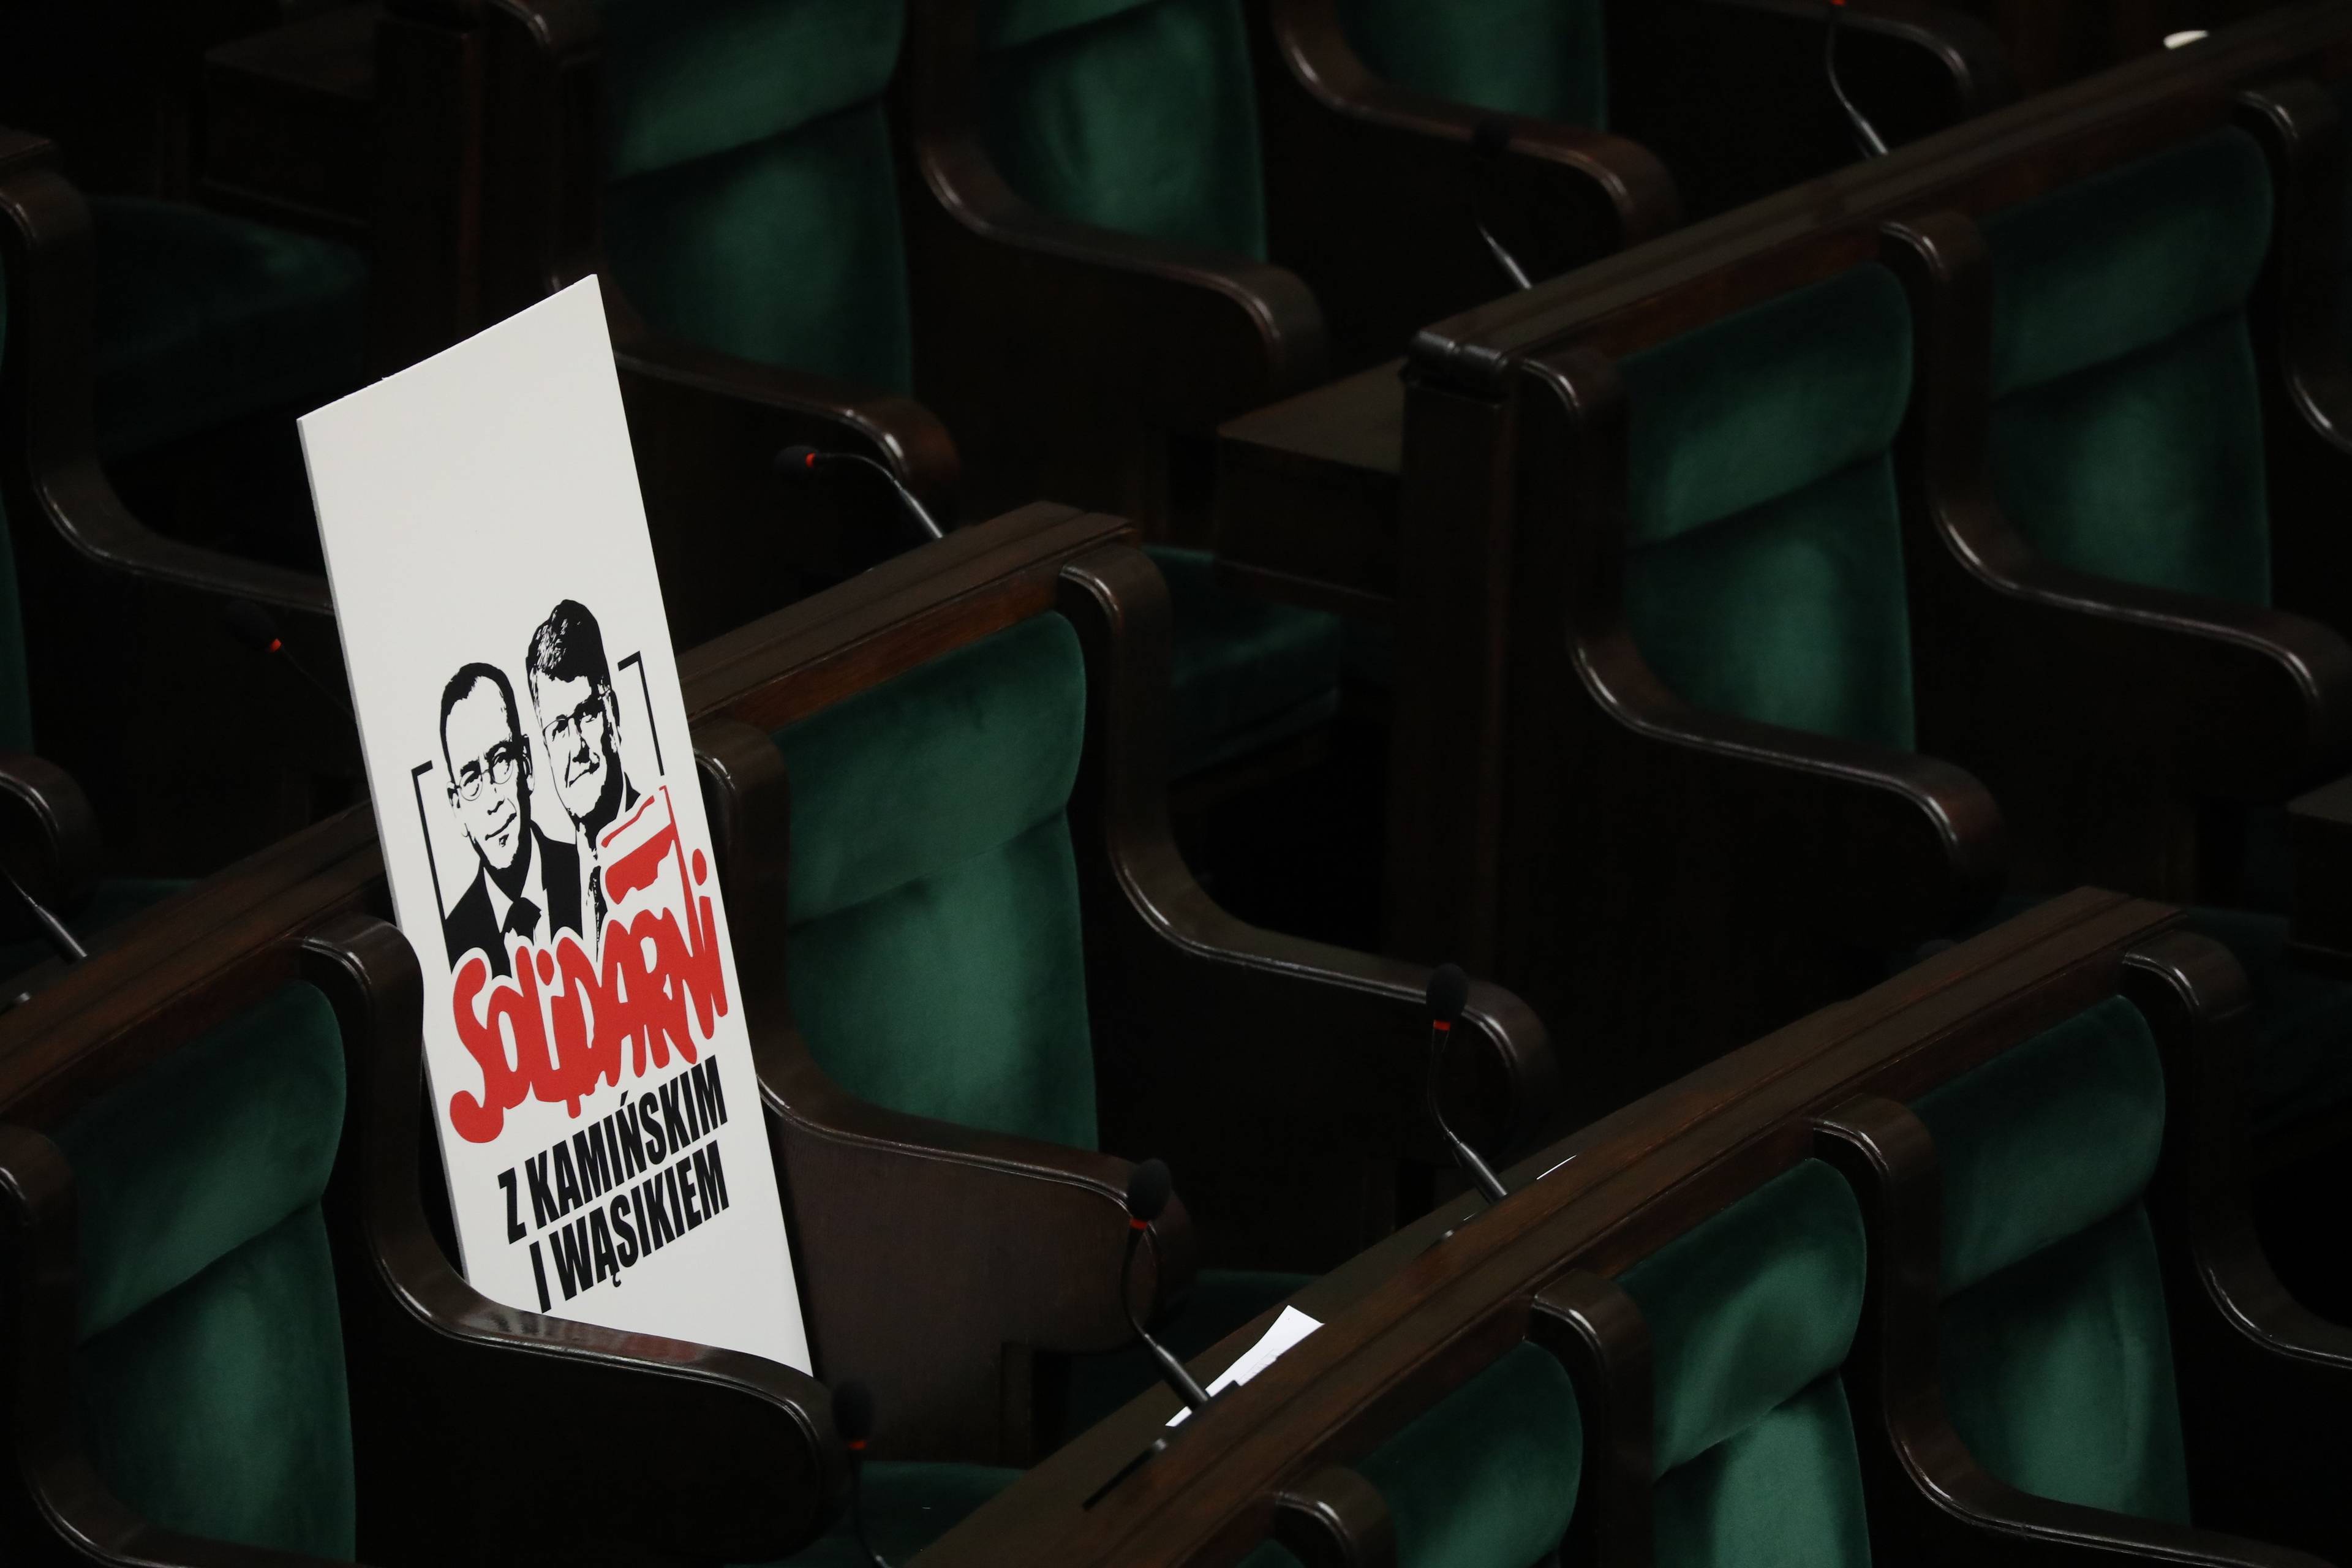 Na miejscu dla posłów na sali plenarnej Sejmu leży transparent z napisem "Solidarni z Wąsikiem i Kamińskim"